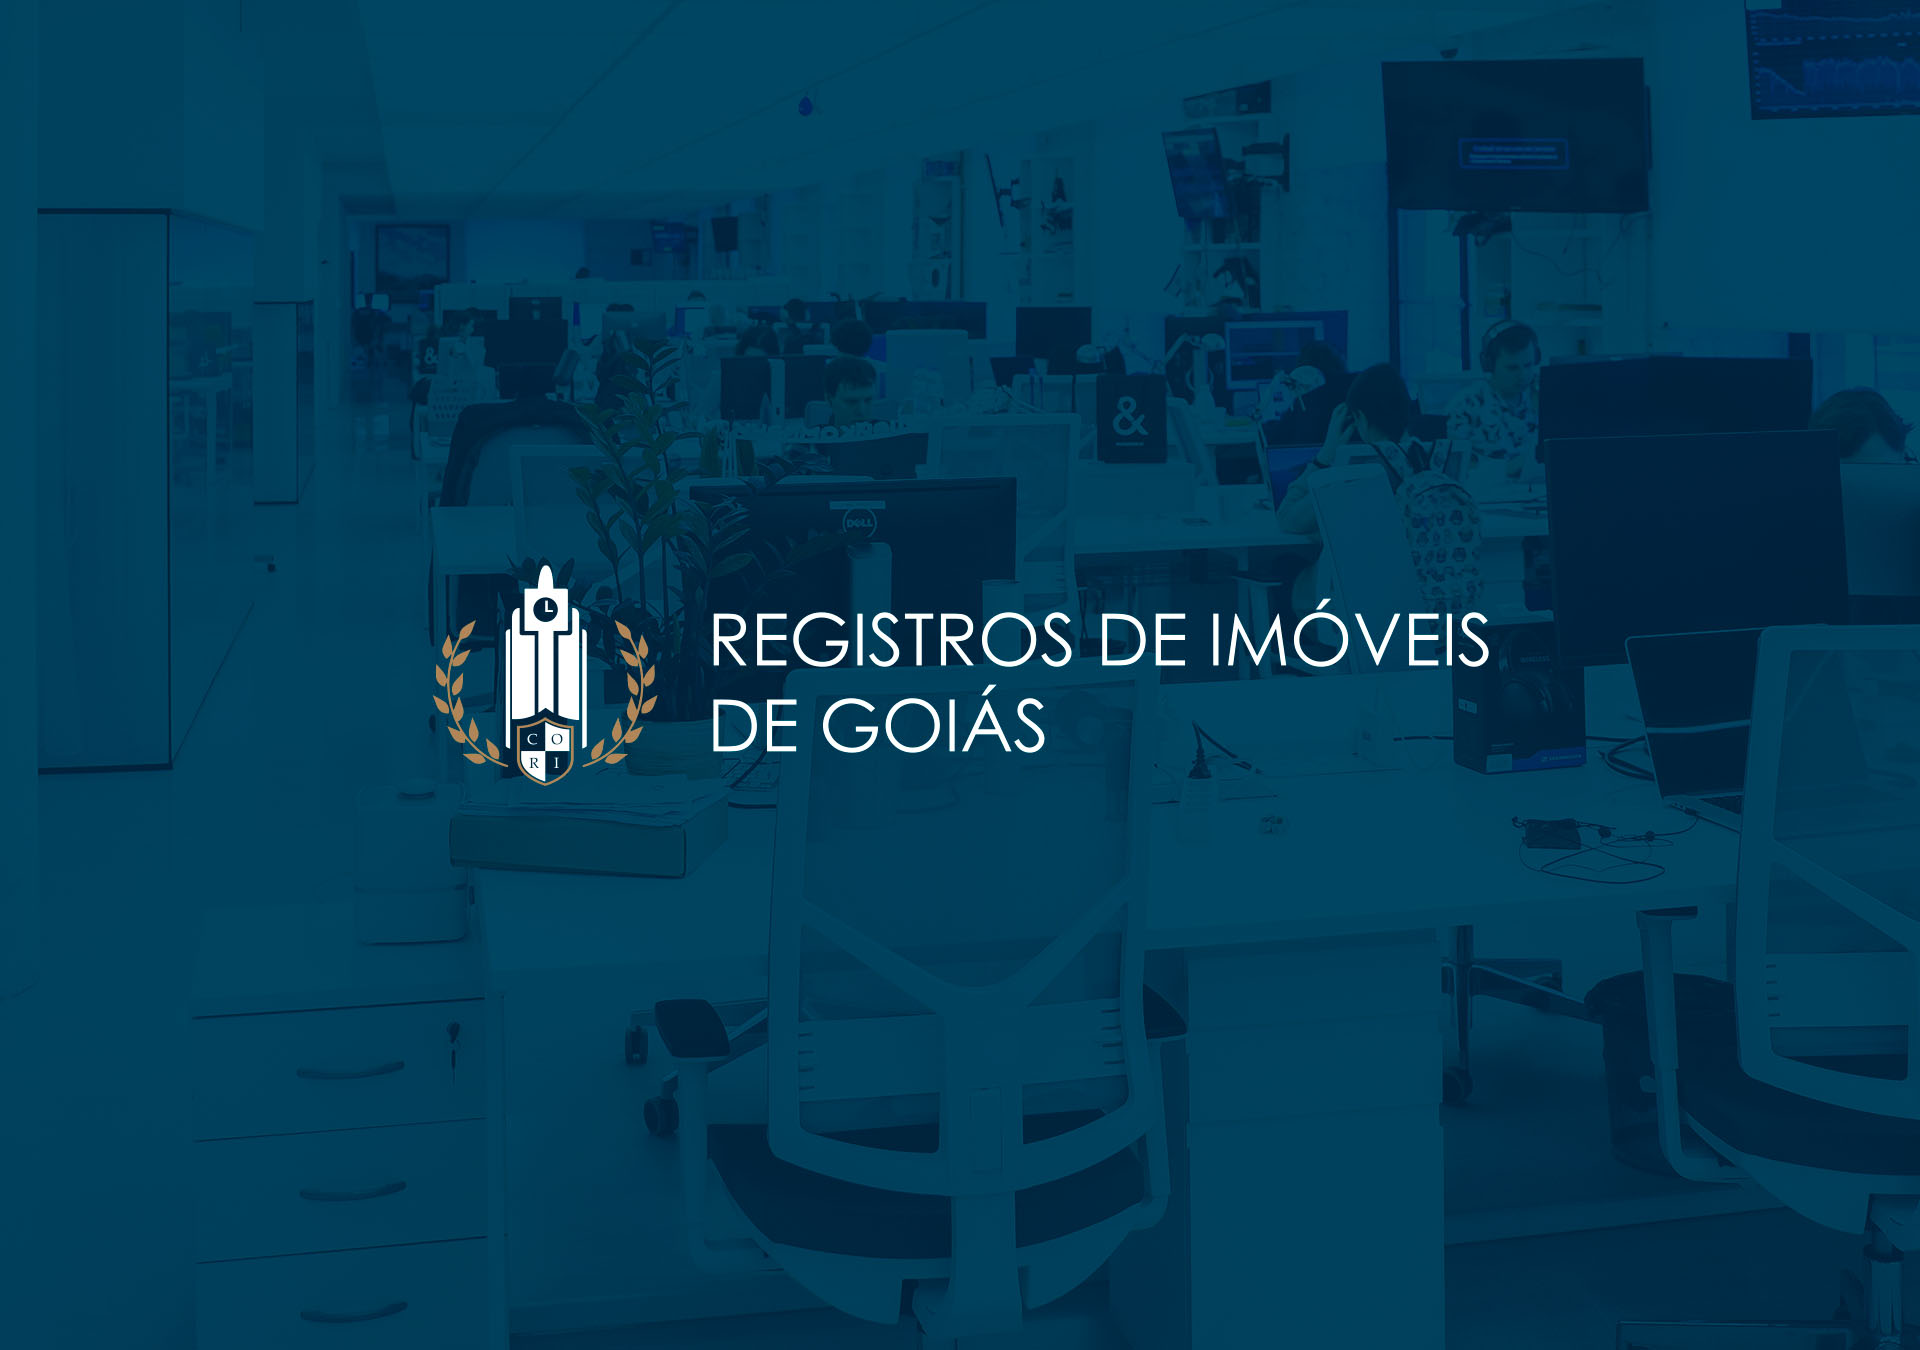 Registros de Imóveis de Goiás - conheça o novo site